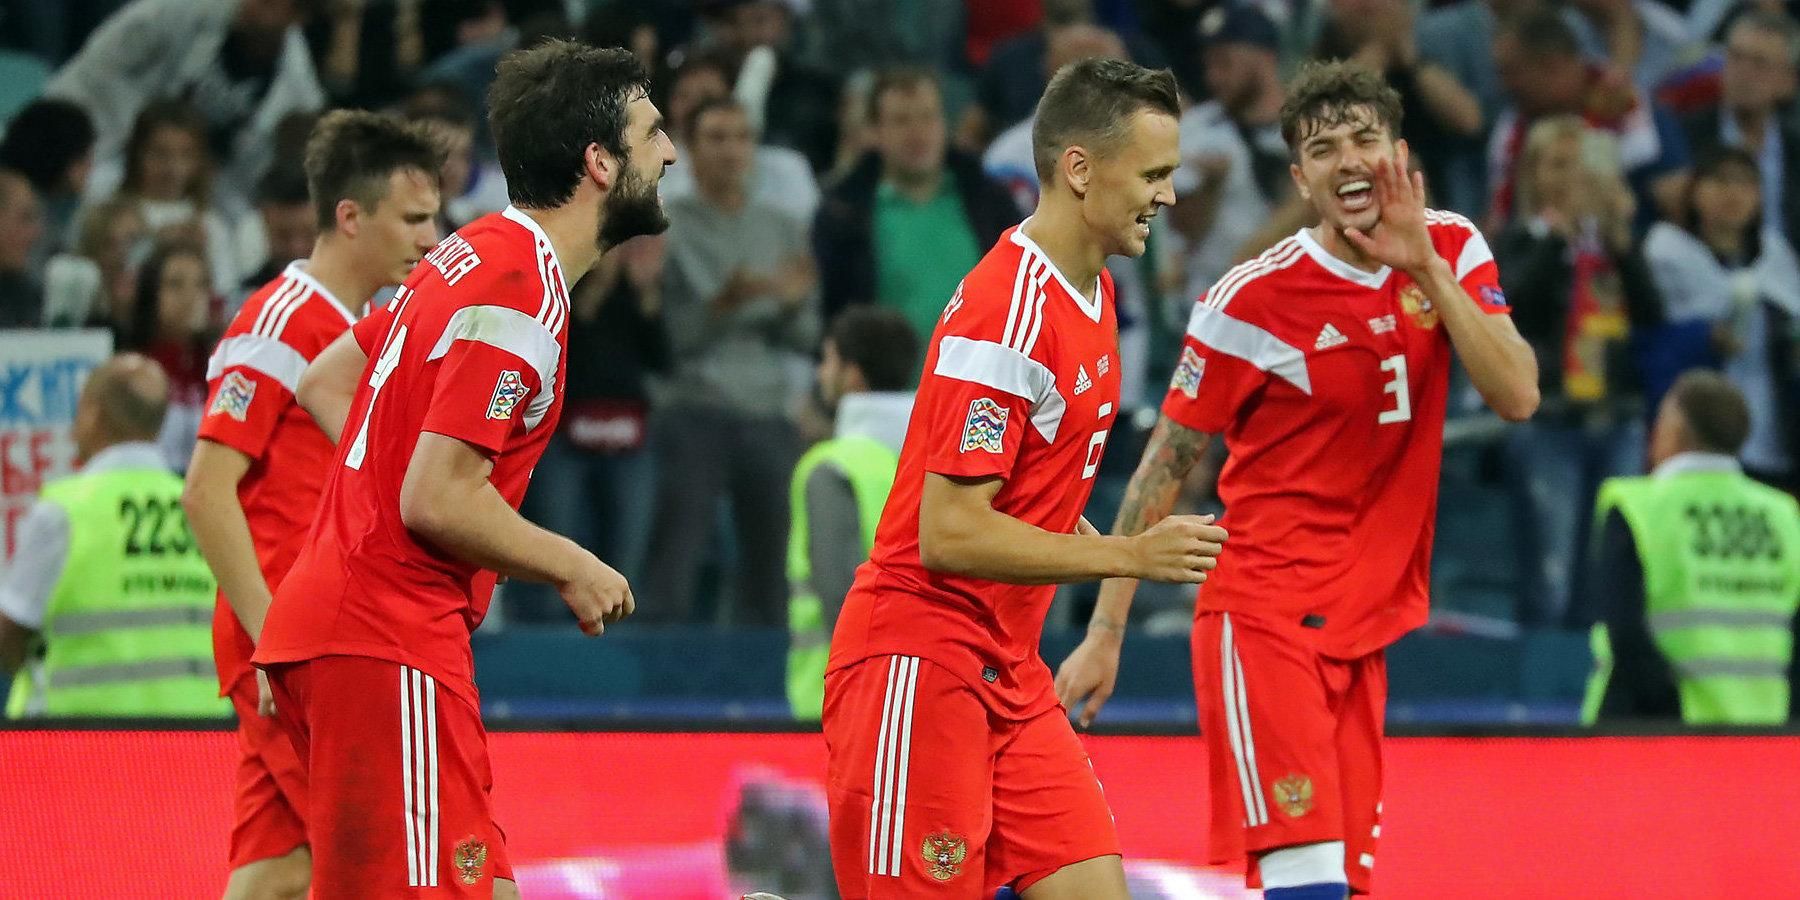 Бельгия – Россия прогноз, ставки букмекеров на матч квалификации Евро-2020